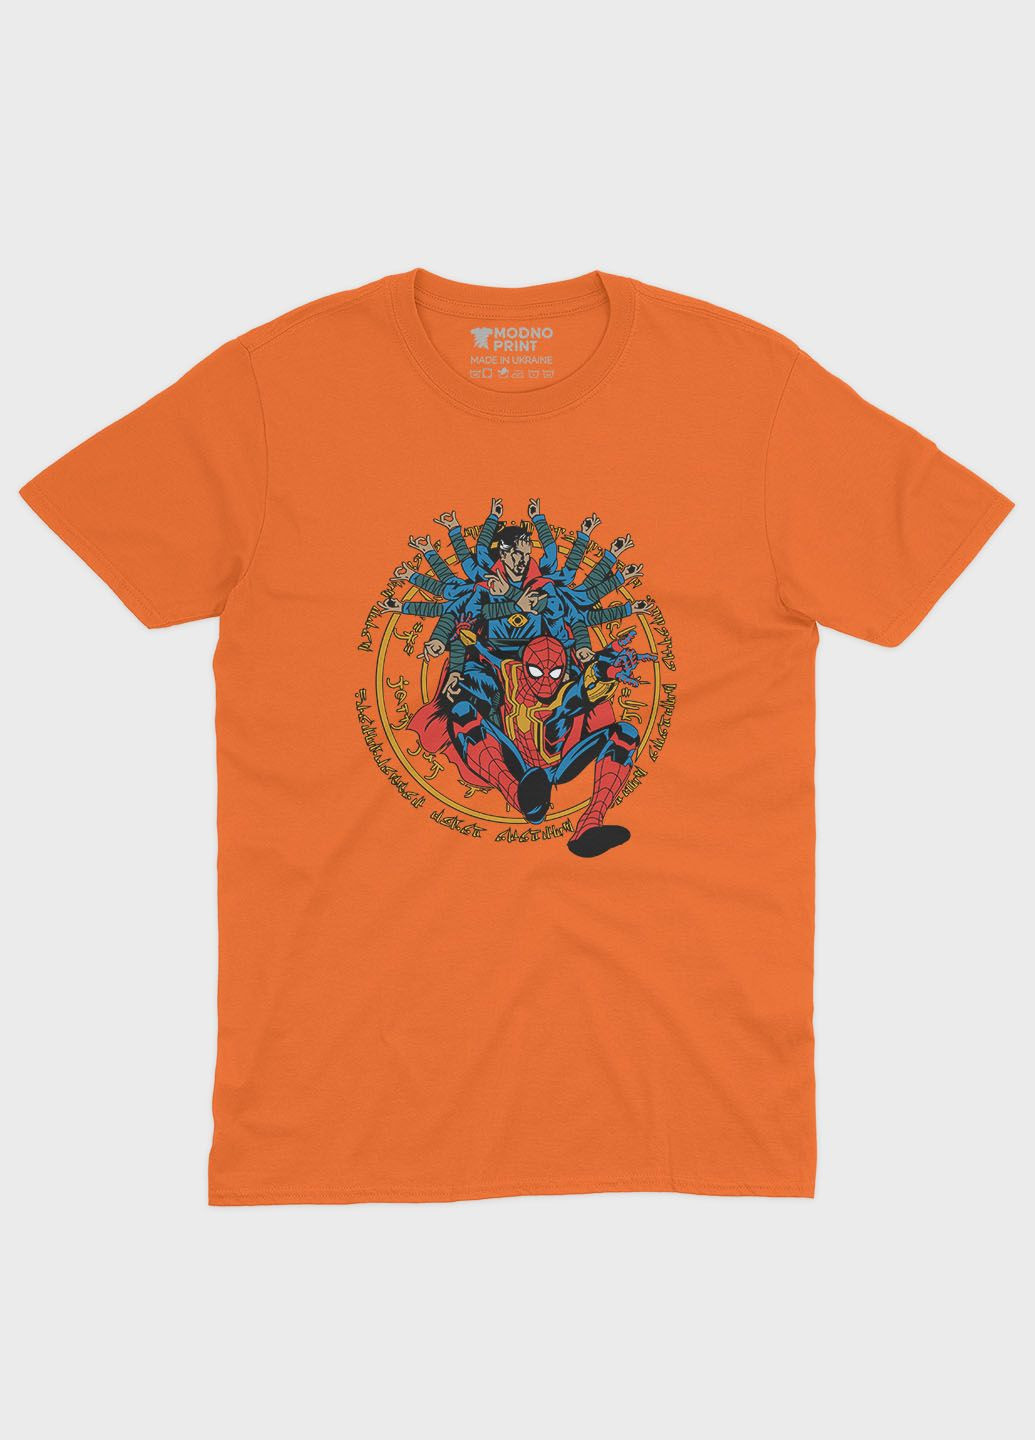 Оранжевая демисезонная футболка для мальчика с принтом супергероя - человек-паук (ts001-1-ora-006-014-010-b) Modno